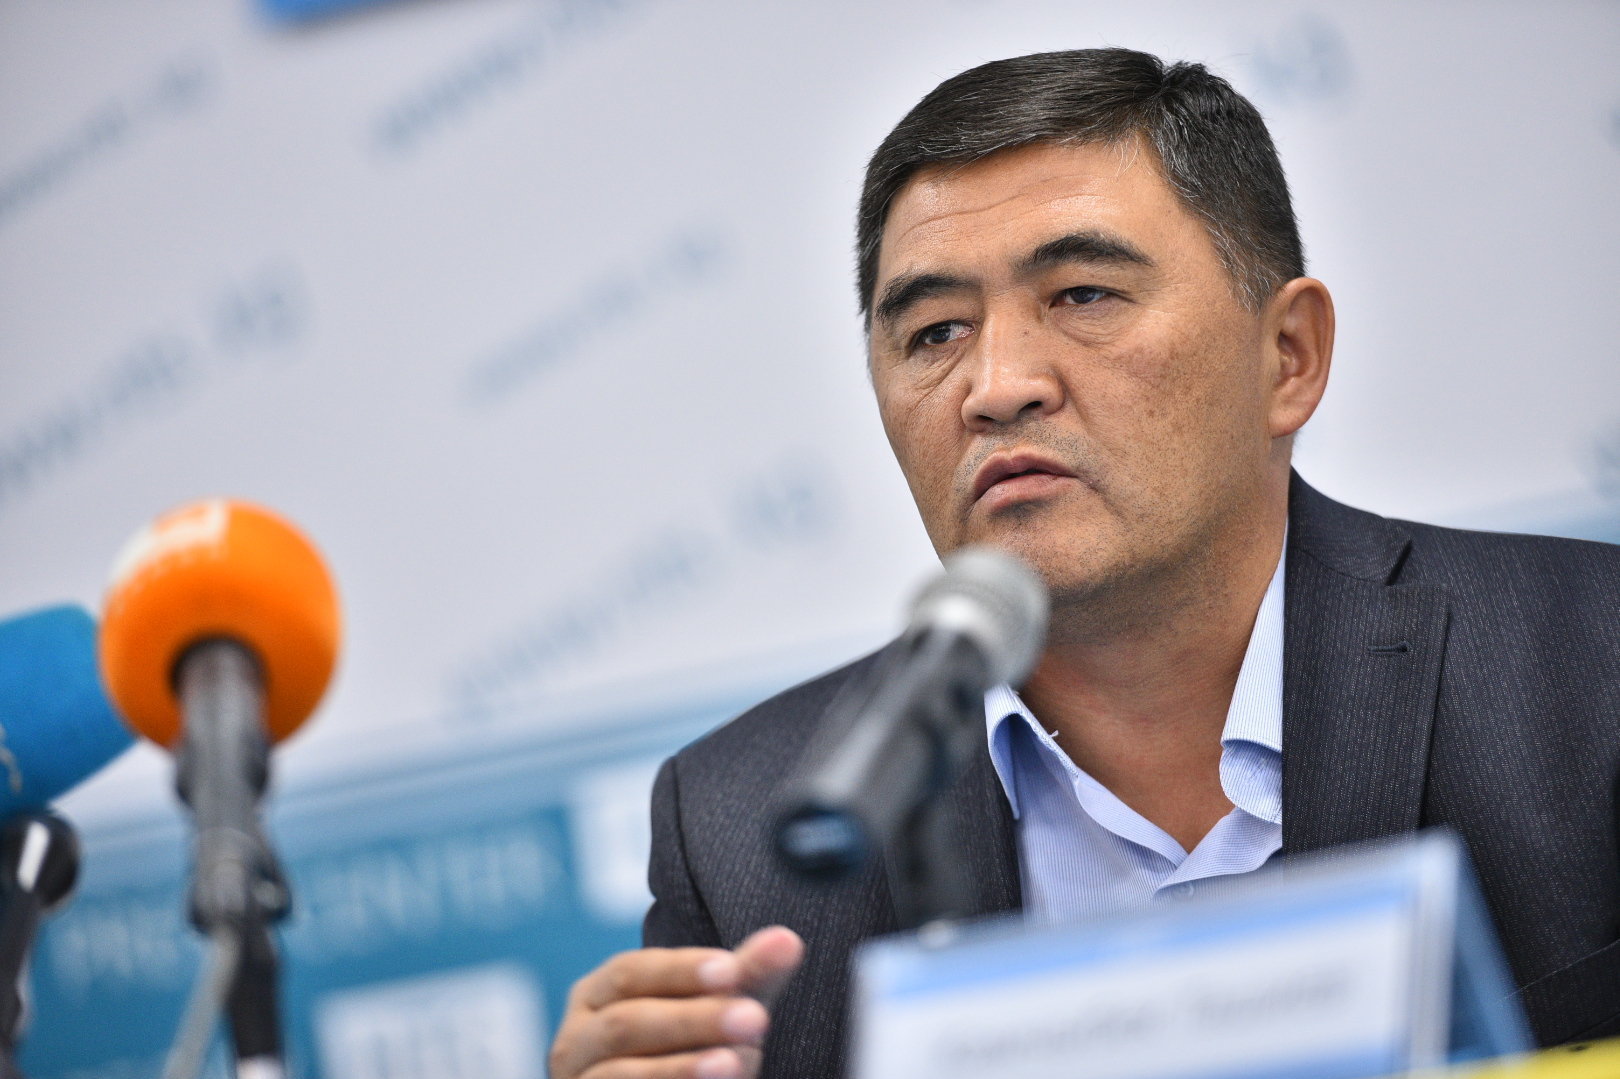 Кандидат в депутаты от партии Республика — Ата-Журт Камчыбек Ташиев на пресс-конференции в Бишкеке.